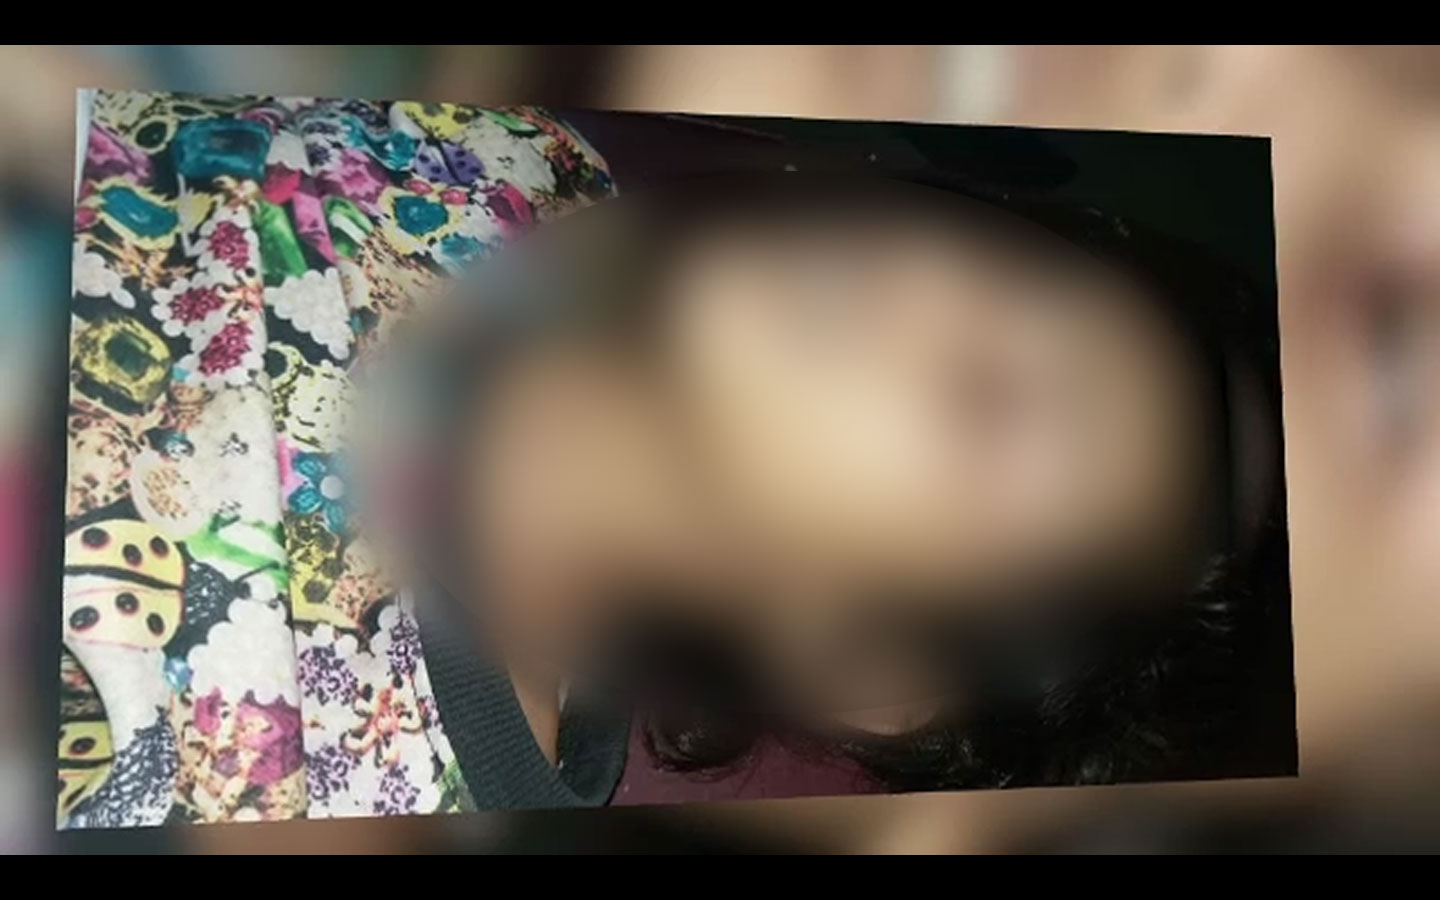 لاہور ، لوہاری گیٹ میں 9 سالہ بچی کو گلے میں پھندا ڈال کر قتل کر دیا گیا